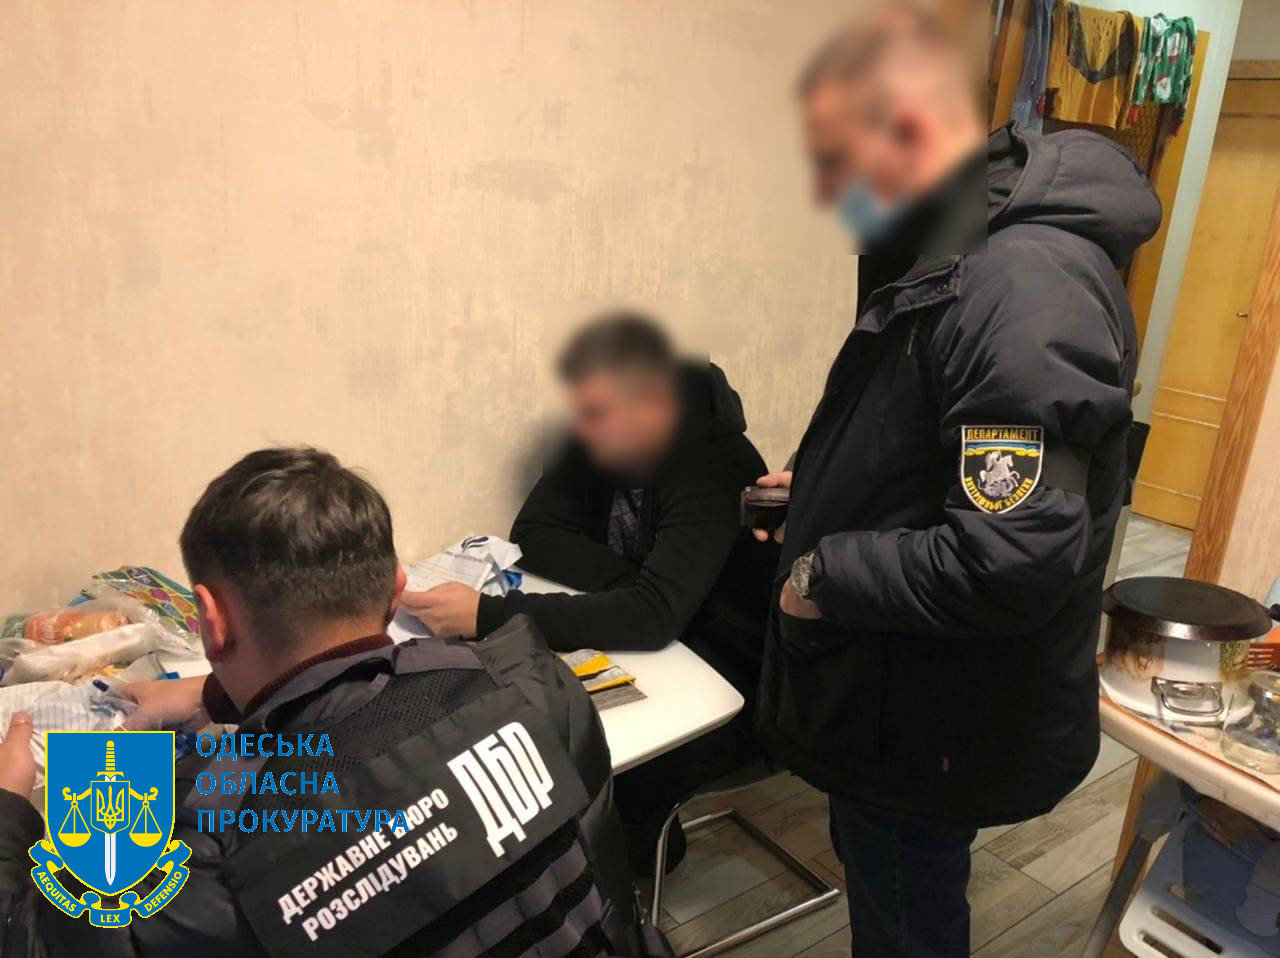 Позбавлення волі та вимагання 170 тис грн за непритягнення до надуманої кримінальної відповідальності – підозрюють двох поліцейських на Одещині (ФОТО)